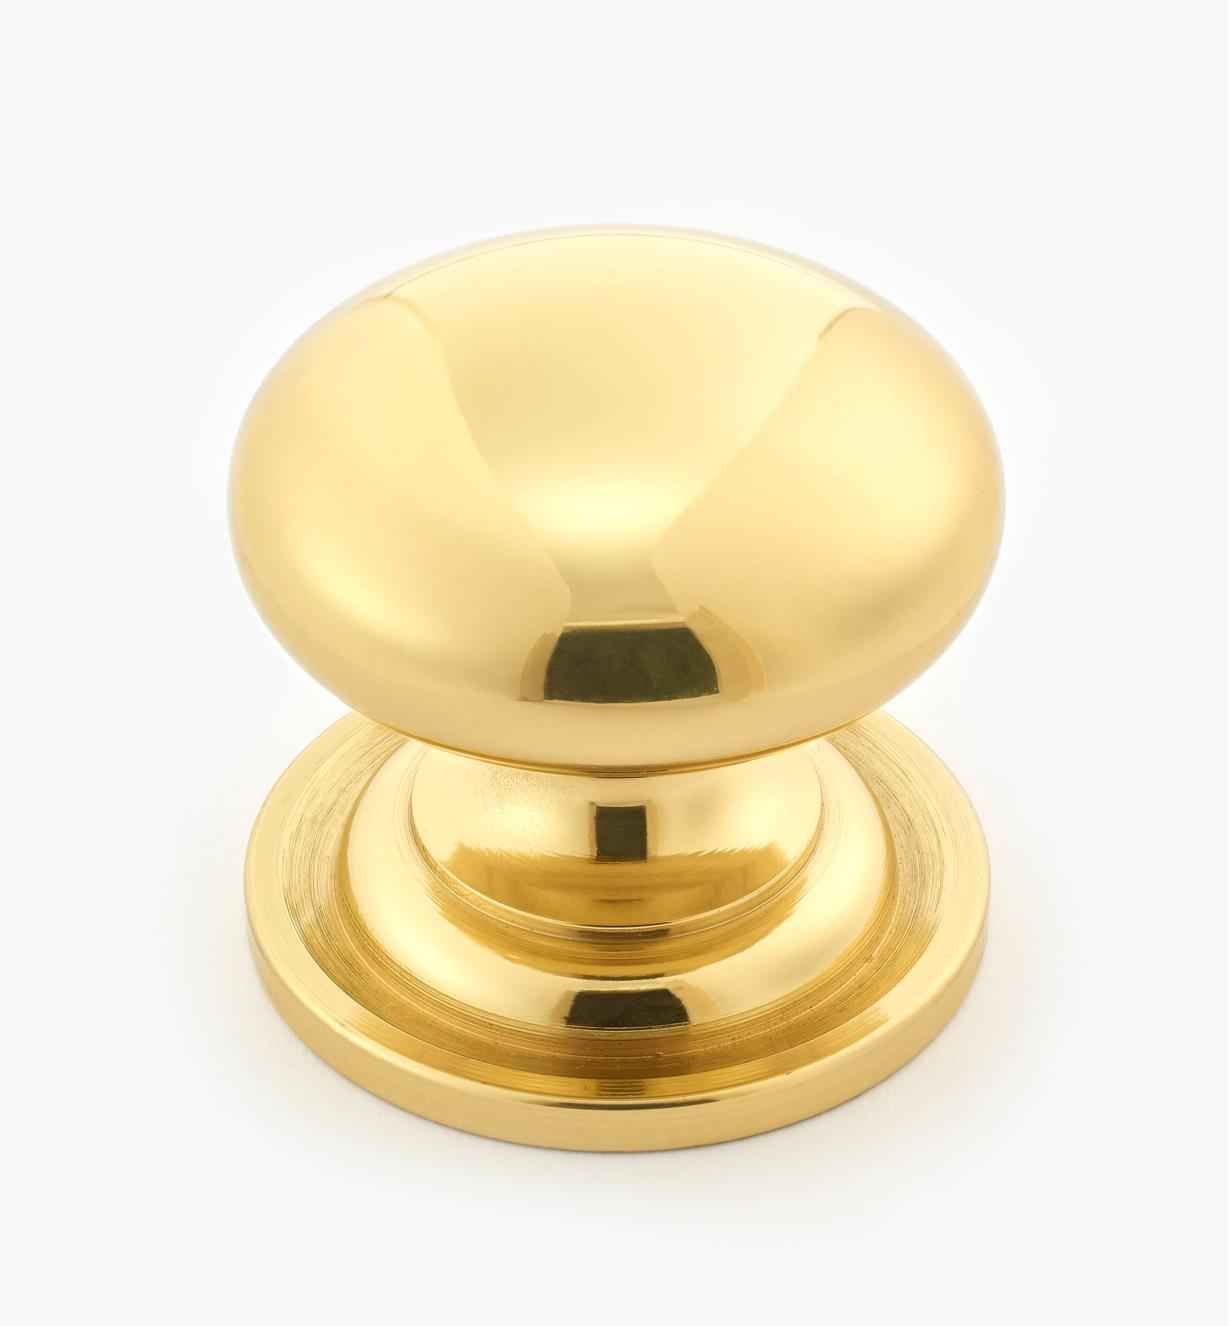 00W9012 - 1 3/8" x 1 1/4" Solid Brass Knob